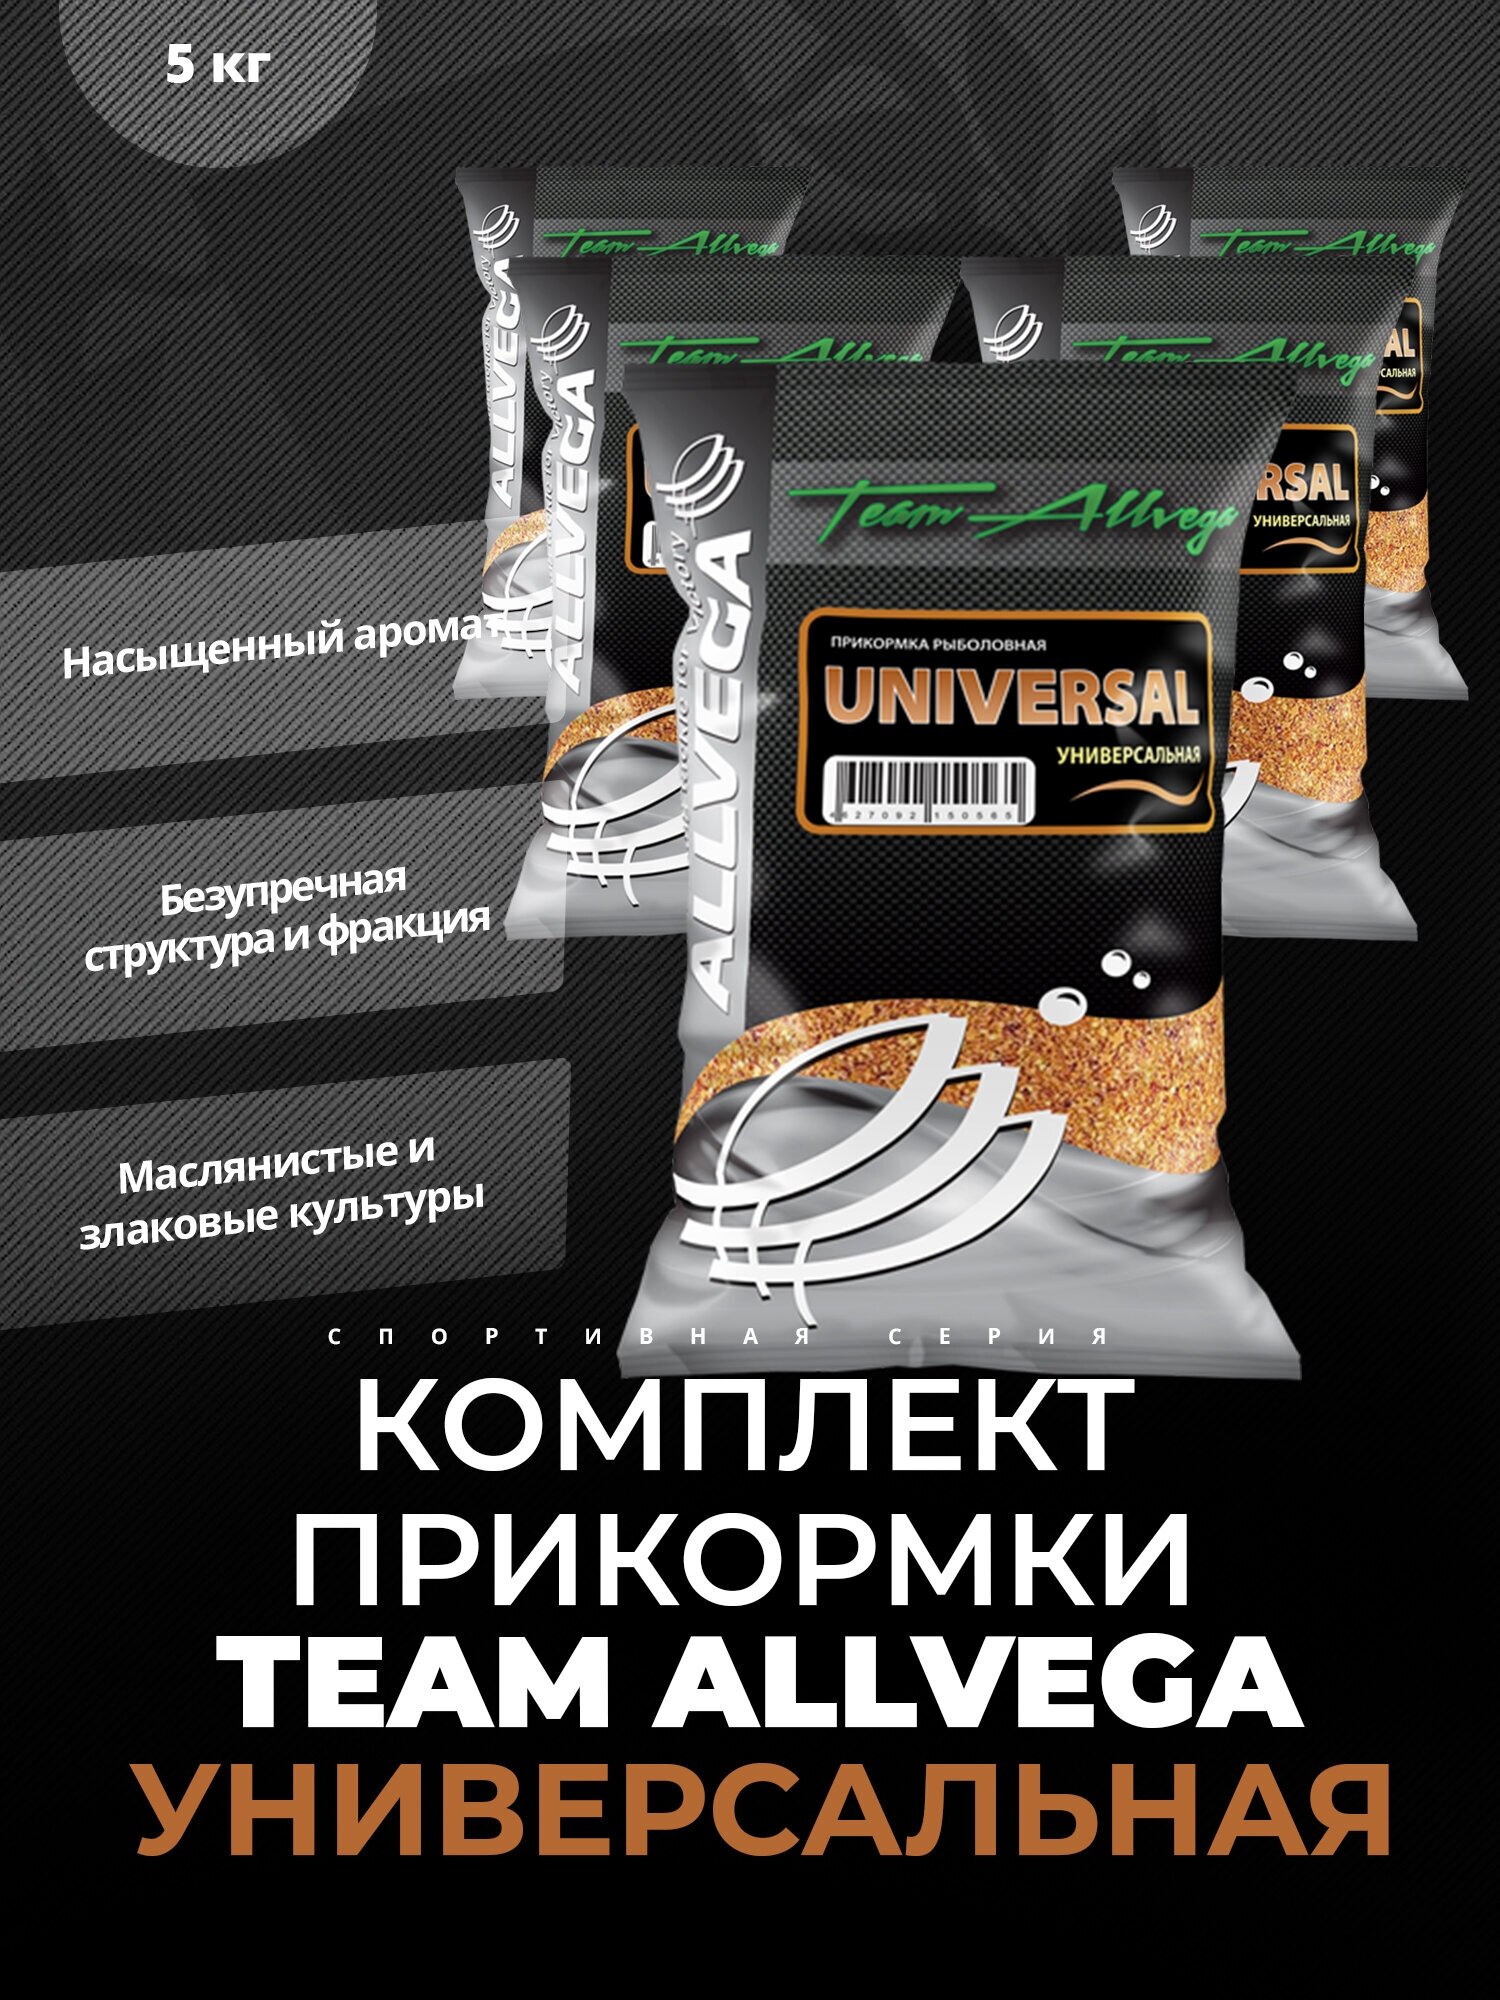  ALLVEGA "Team Allvega Universal" 1 () 5   1 .